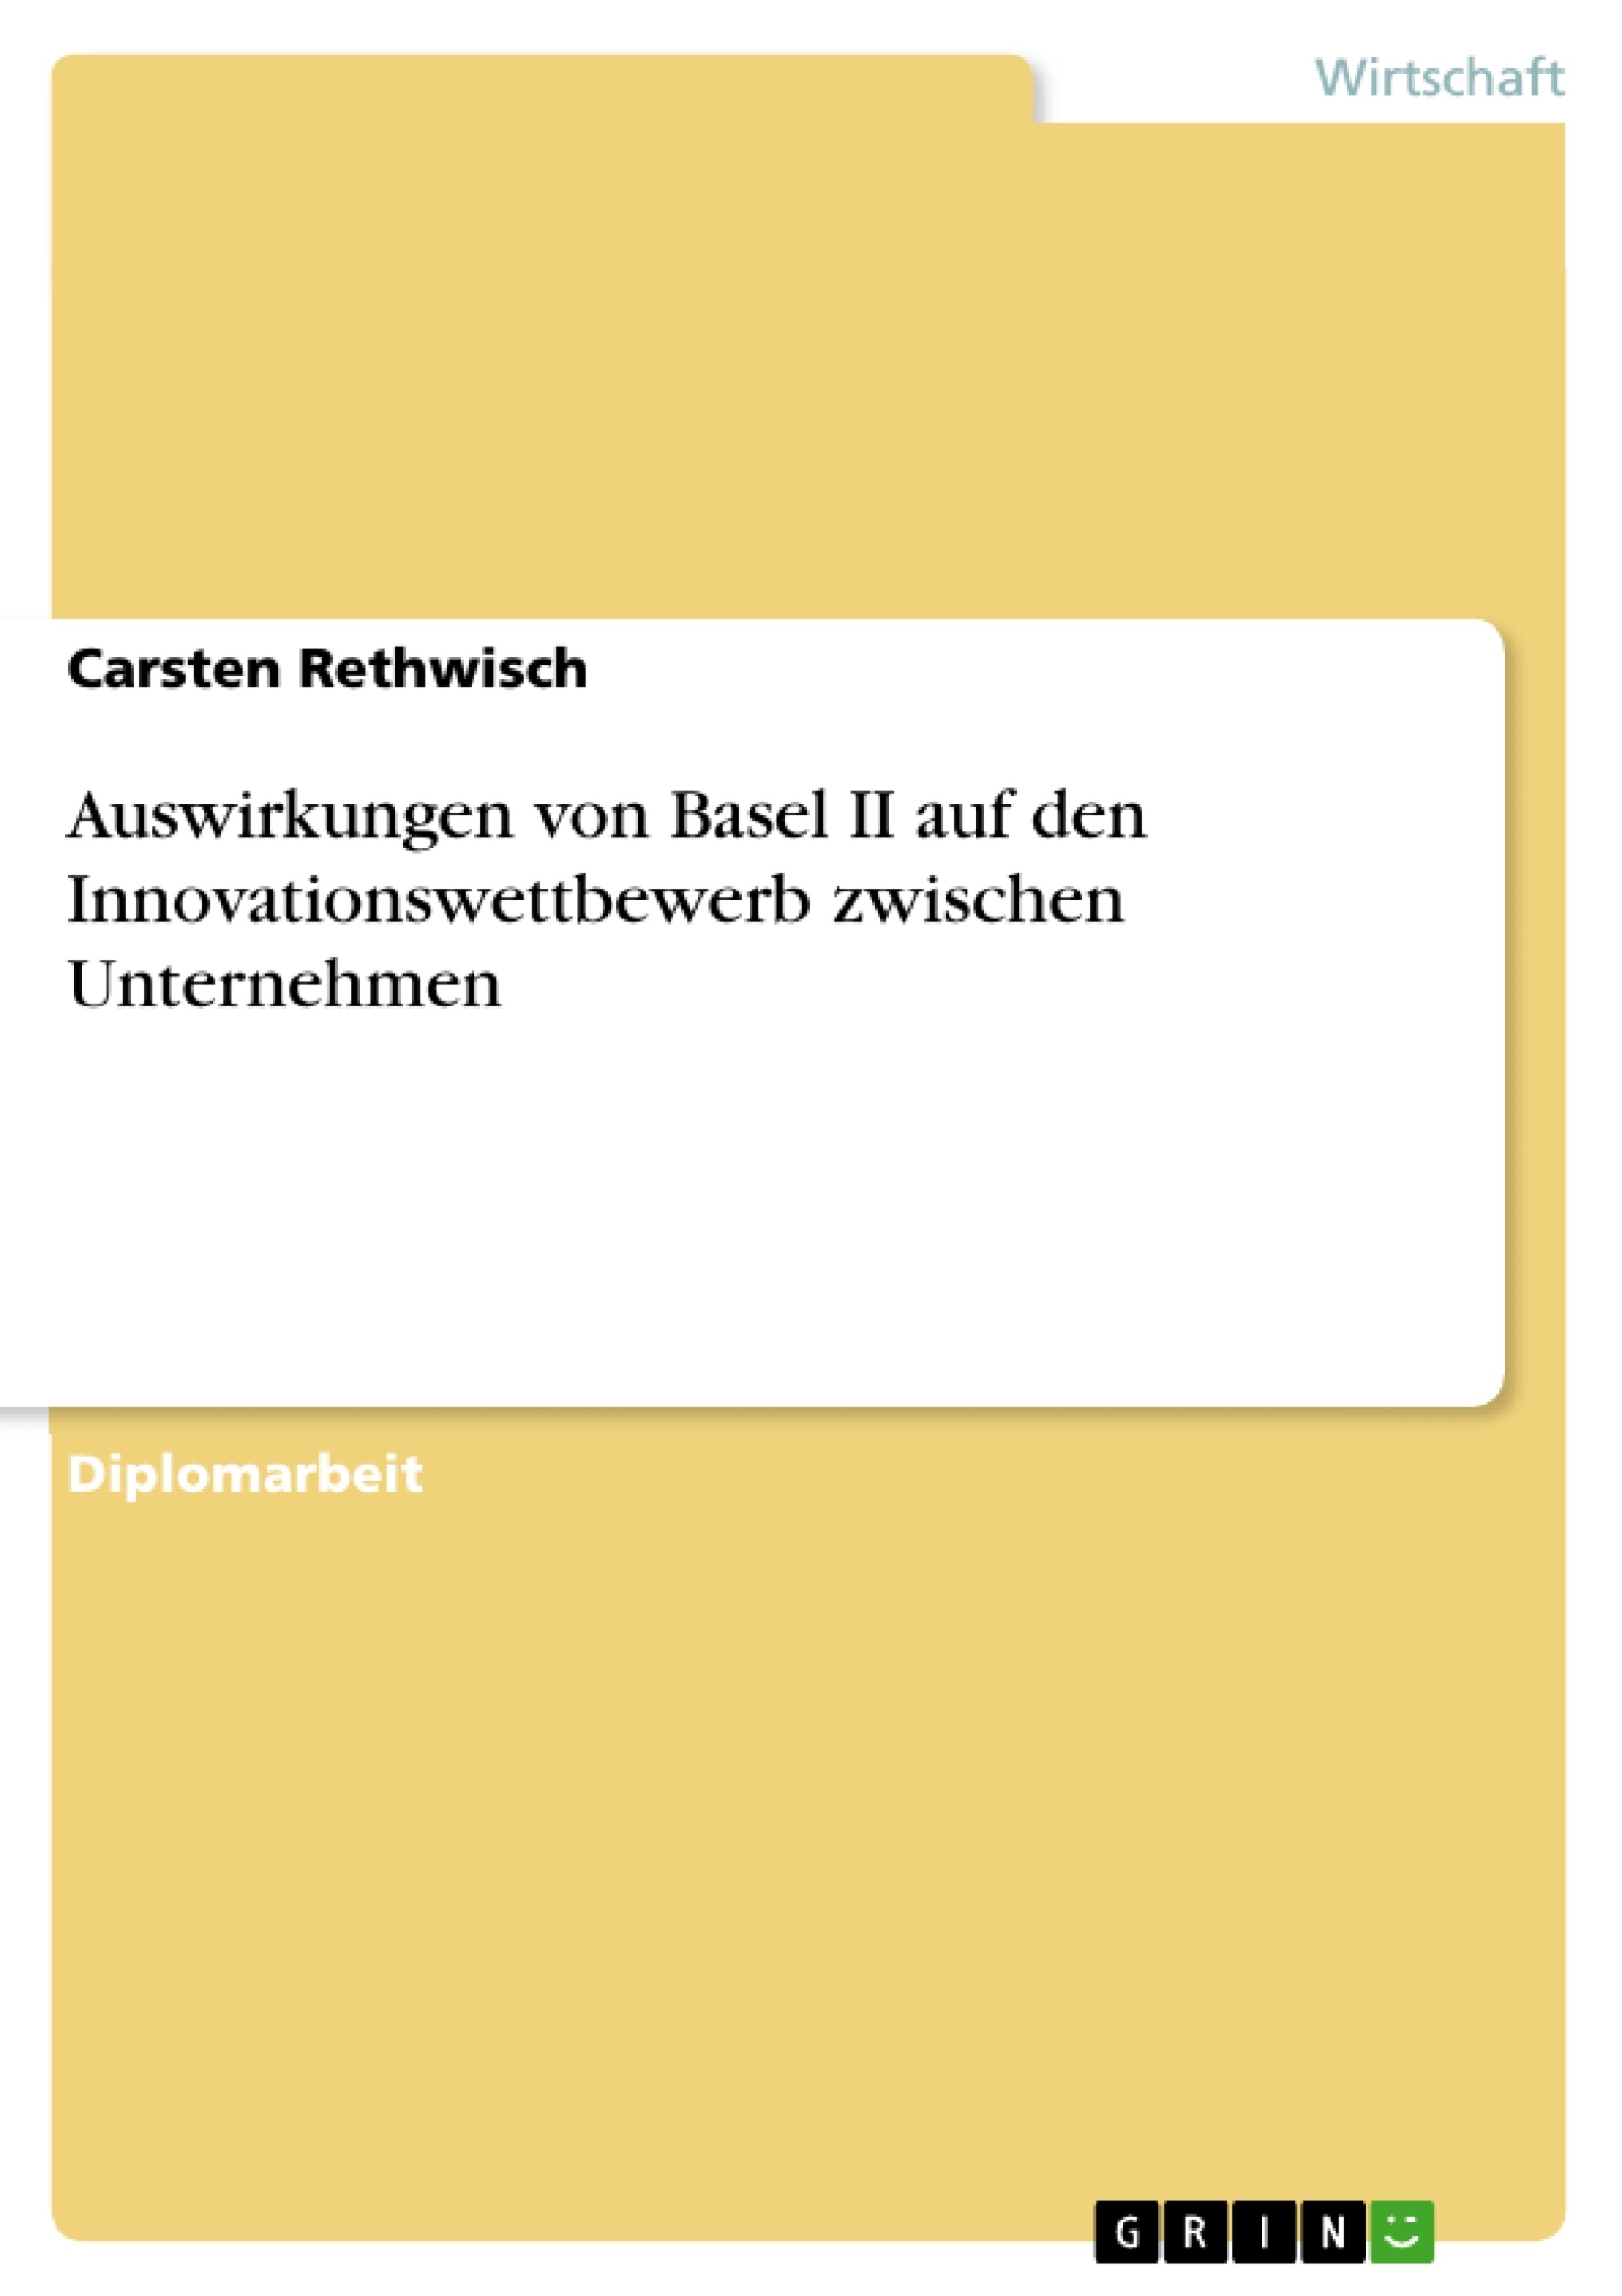 Title: Auswirkungen von Basel II auf den Innovationswettbewerb zwischen Unternehmen